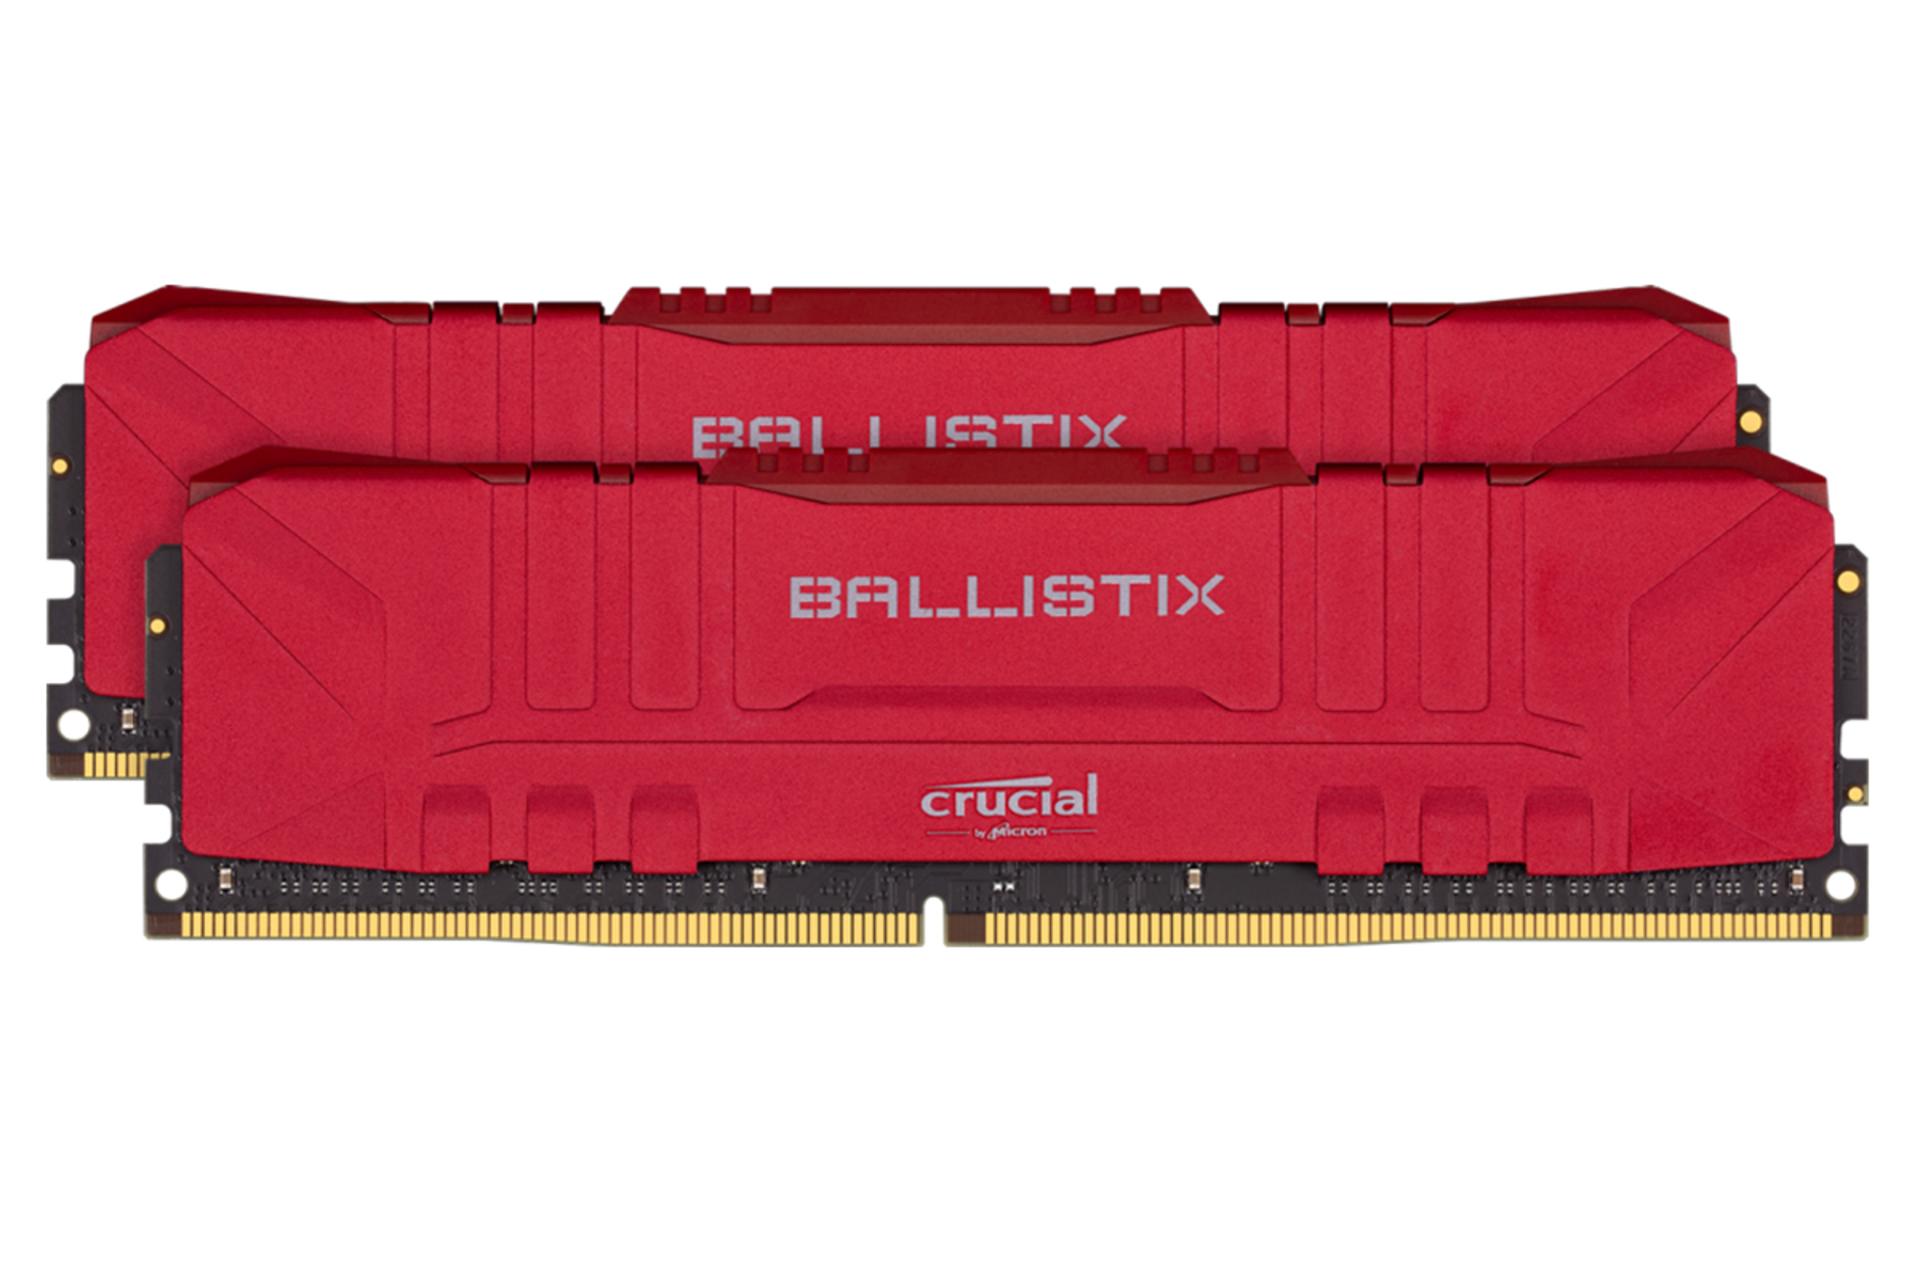 نمای جلو رم کروشیال Ballistix ظرفیت 32 گیگابایت (2x16) از نوع DDR4-3000